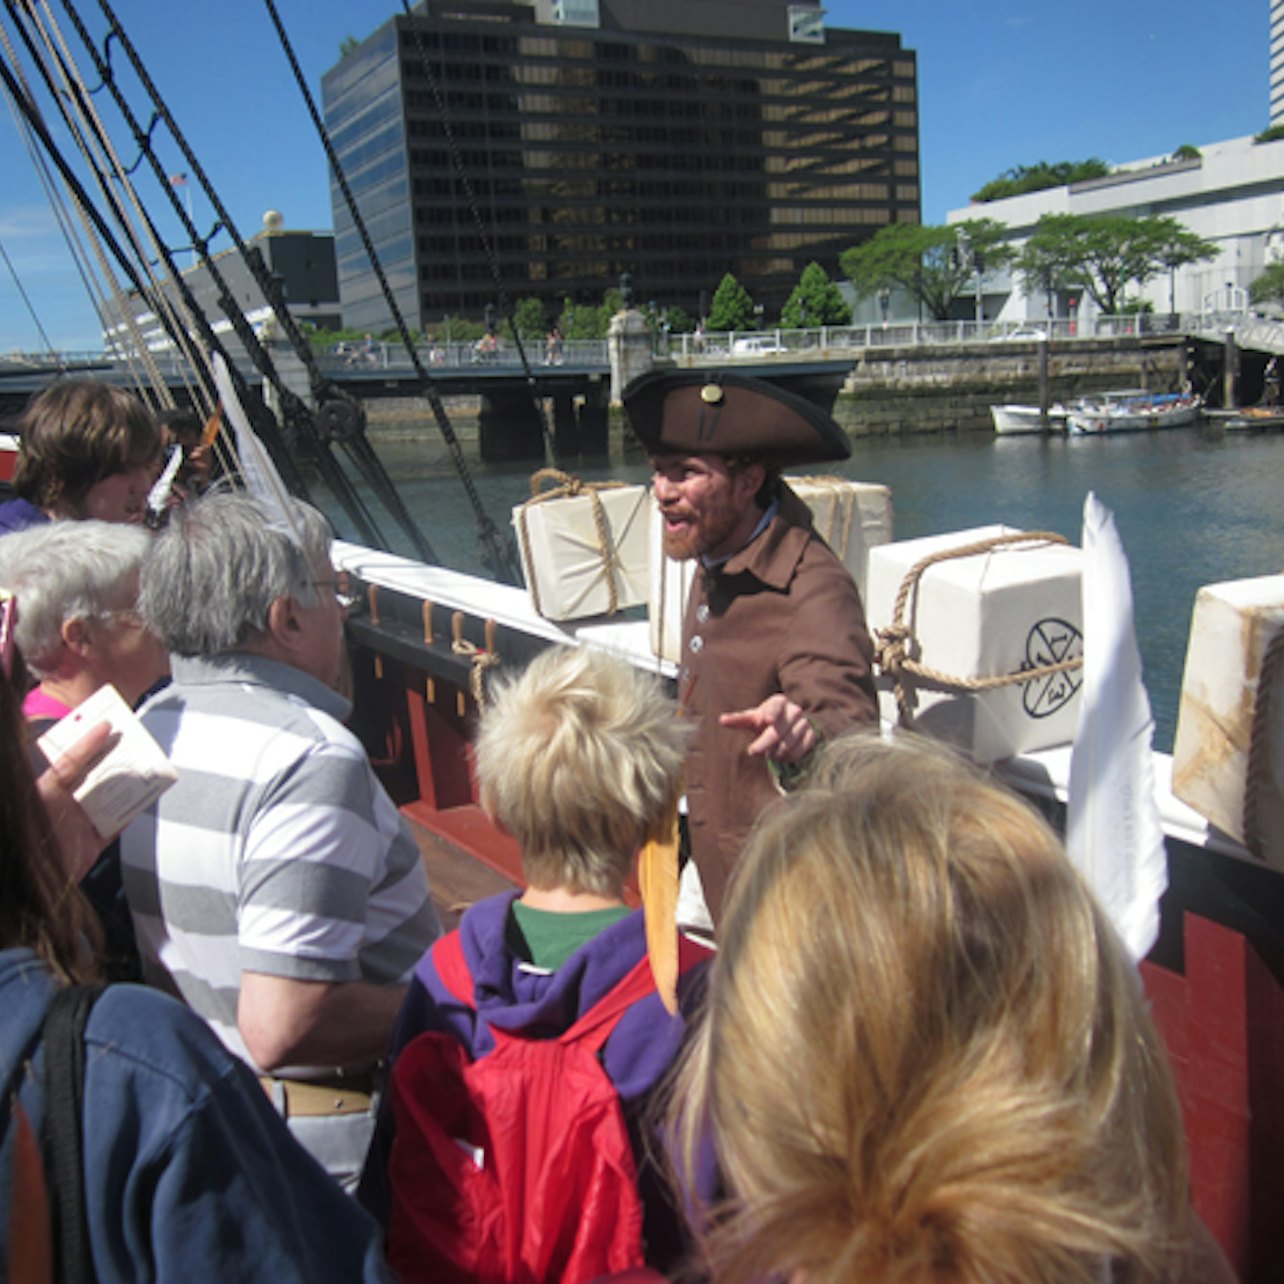 Boston Tea Party Ships & Museum - Alloggi in Boston